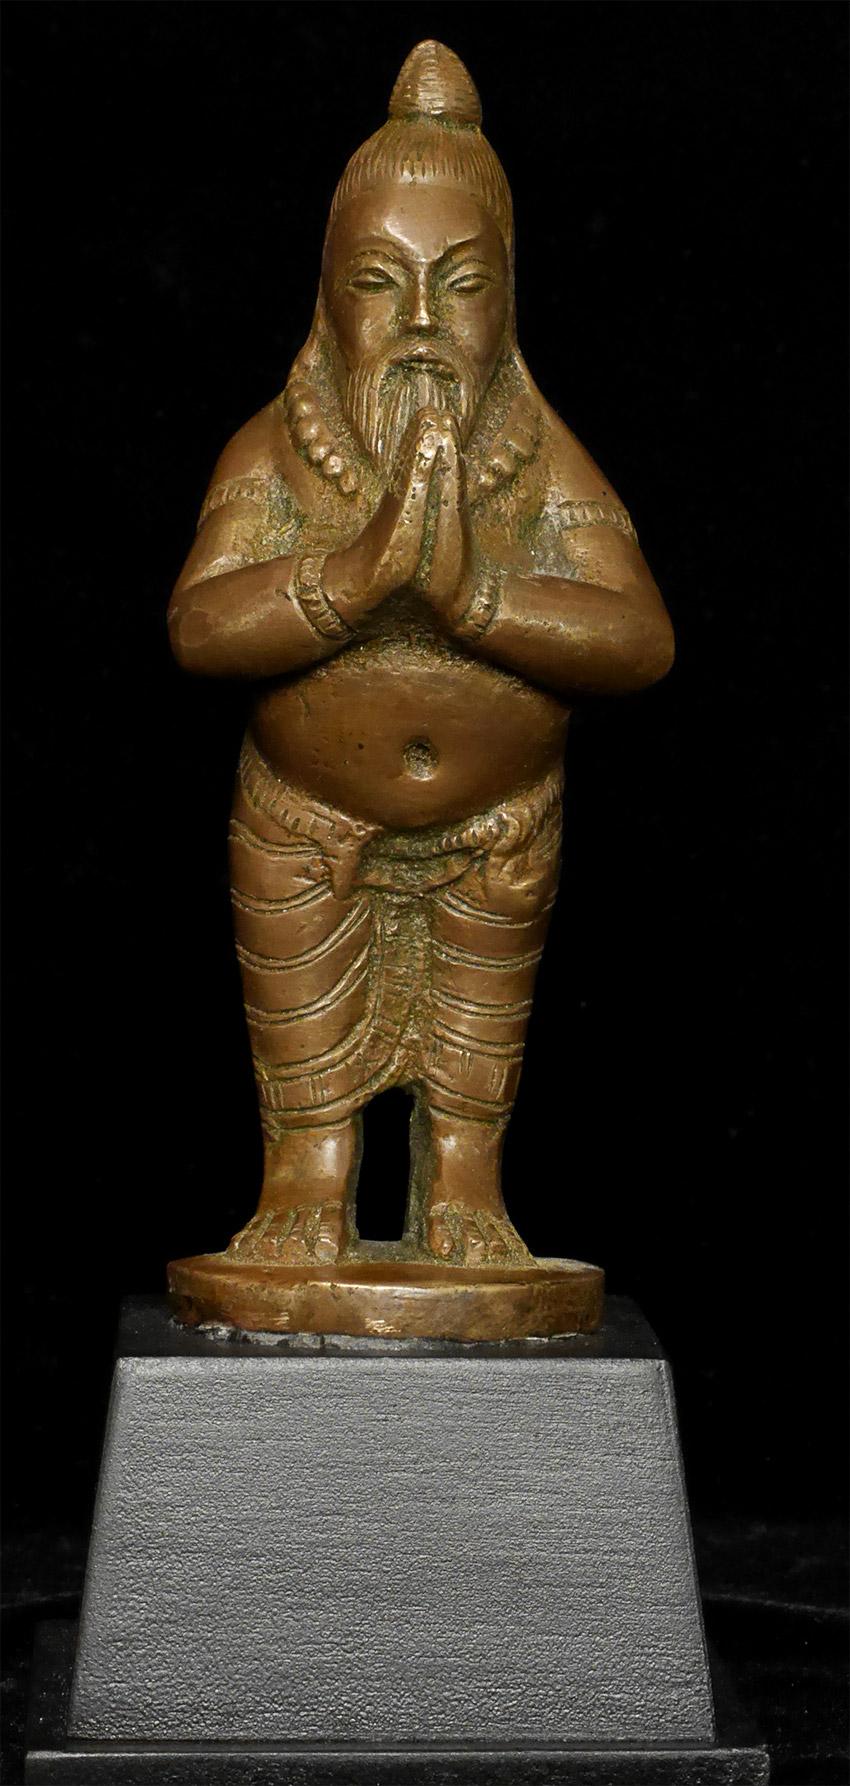 Antique Bronze Indian Yogi, Unique Solid-Cast Hindu Sculpture - 7816 In Good Condition For Sale In Ukiah, CA